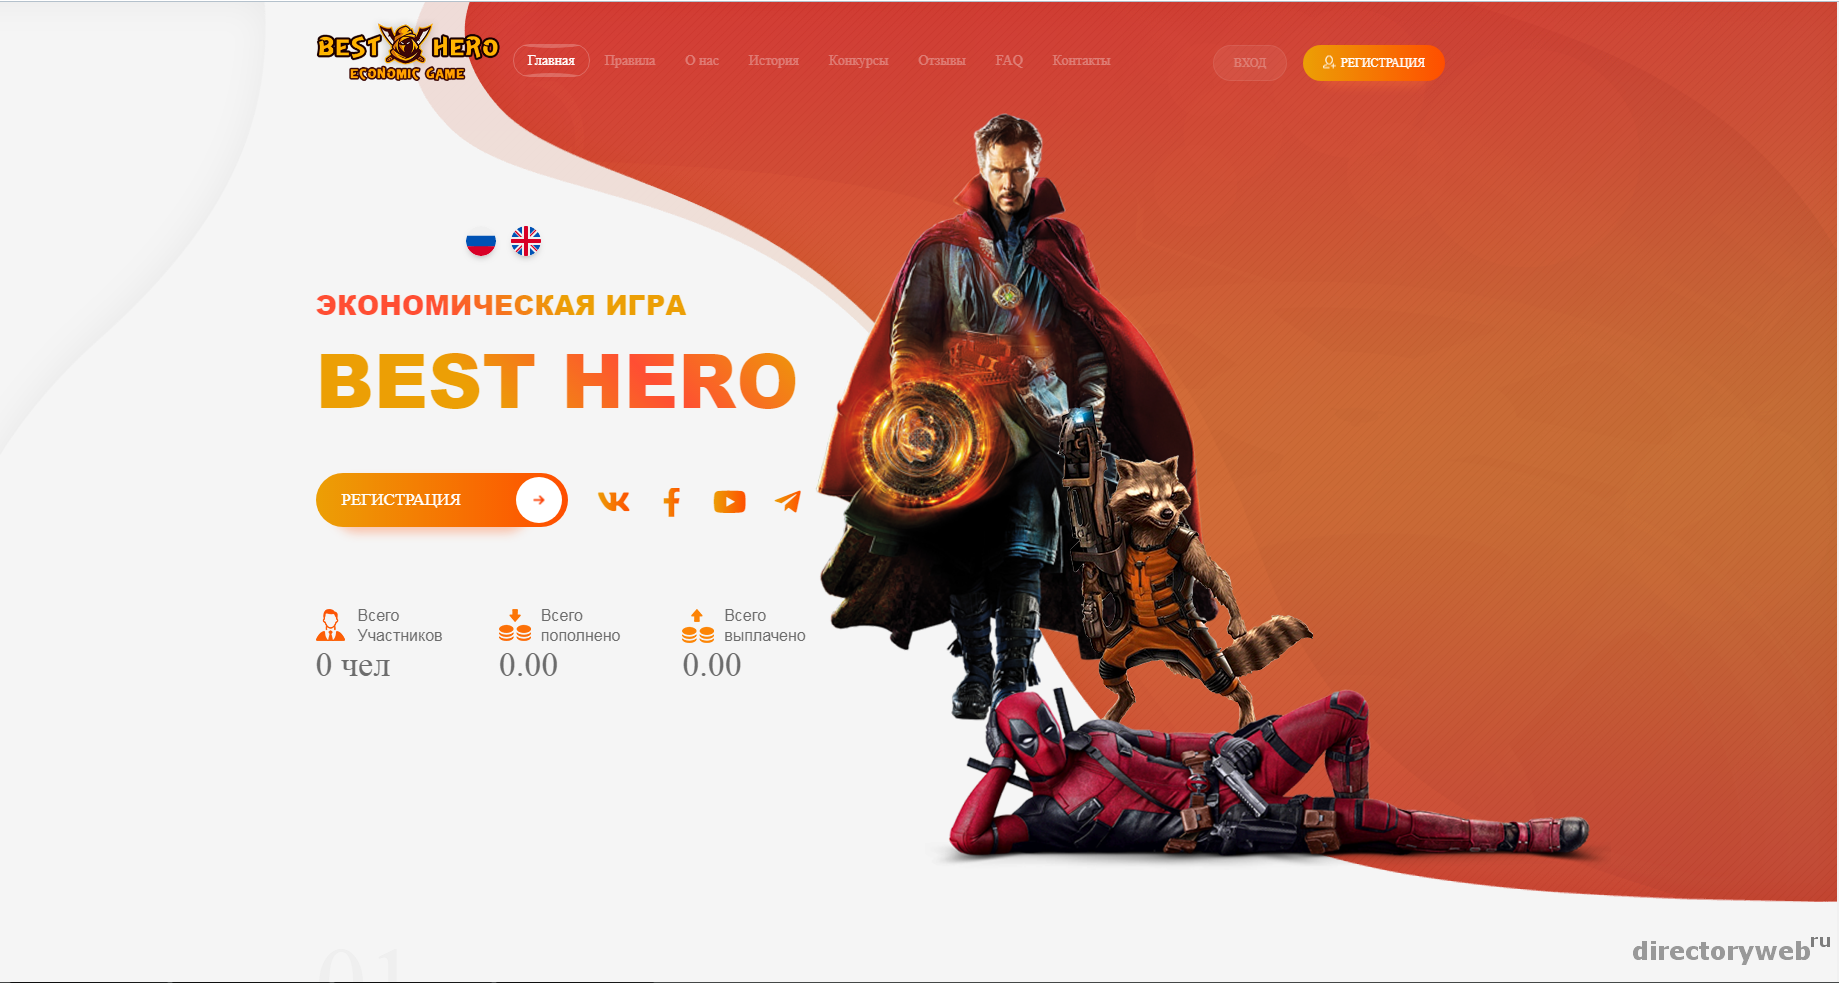 Site Hero. The best Heroes. Картинки HEROMONEY. "Good Hero" History. Script heroes